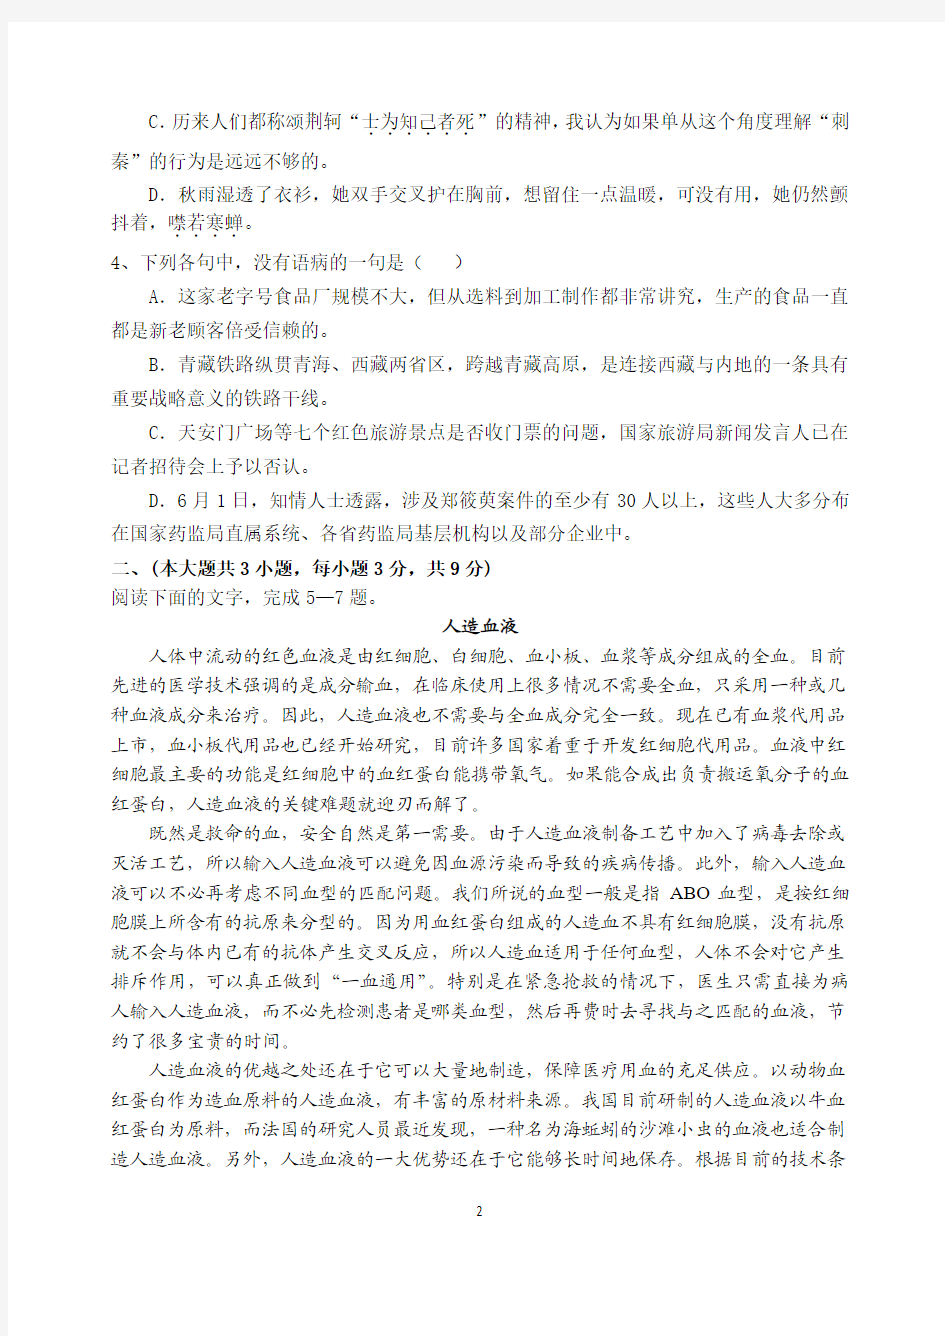 重庆市万州第三中学高2014级高一上期中期考试语文试卷